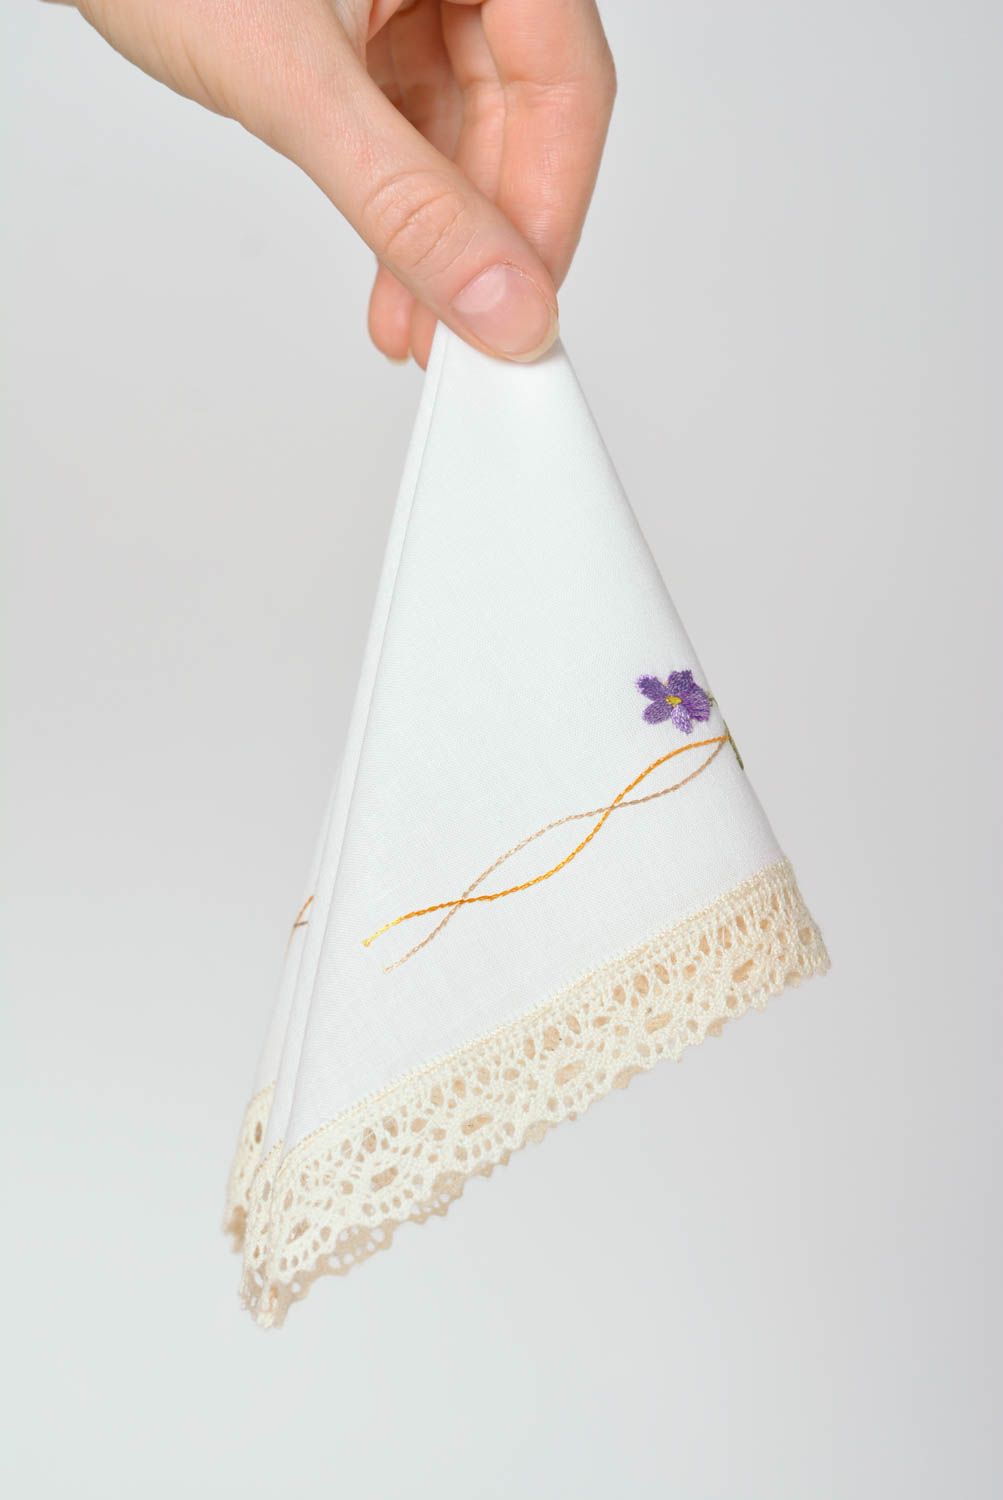 Mouchoir en tissu brodé fait main blanc carré à motif floral Petit cadeau photo 3